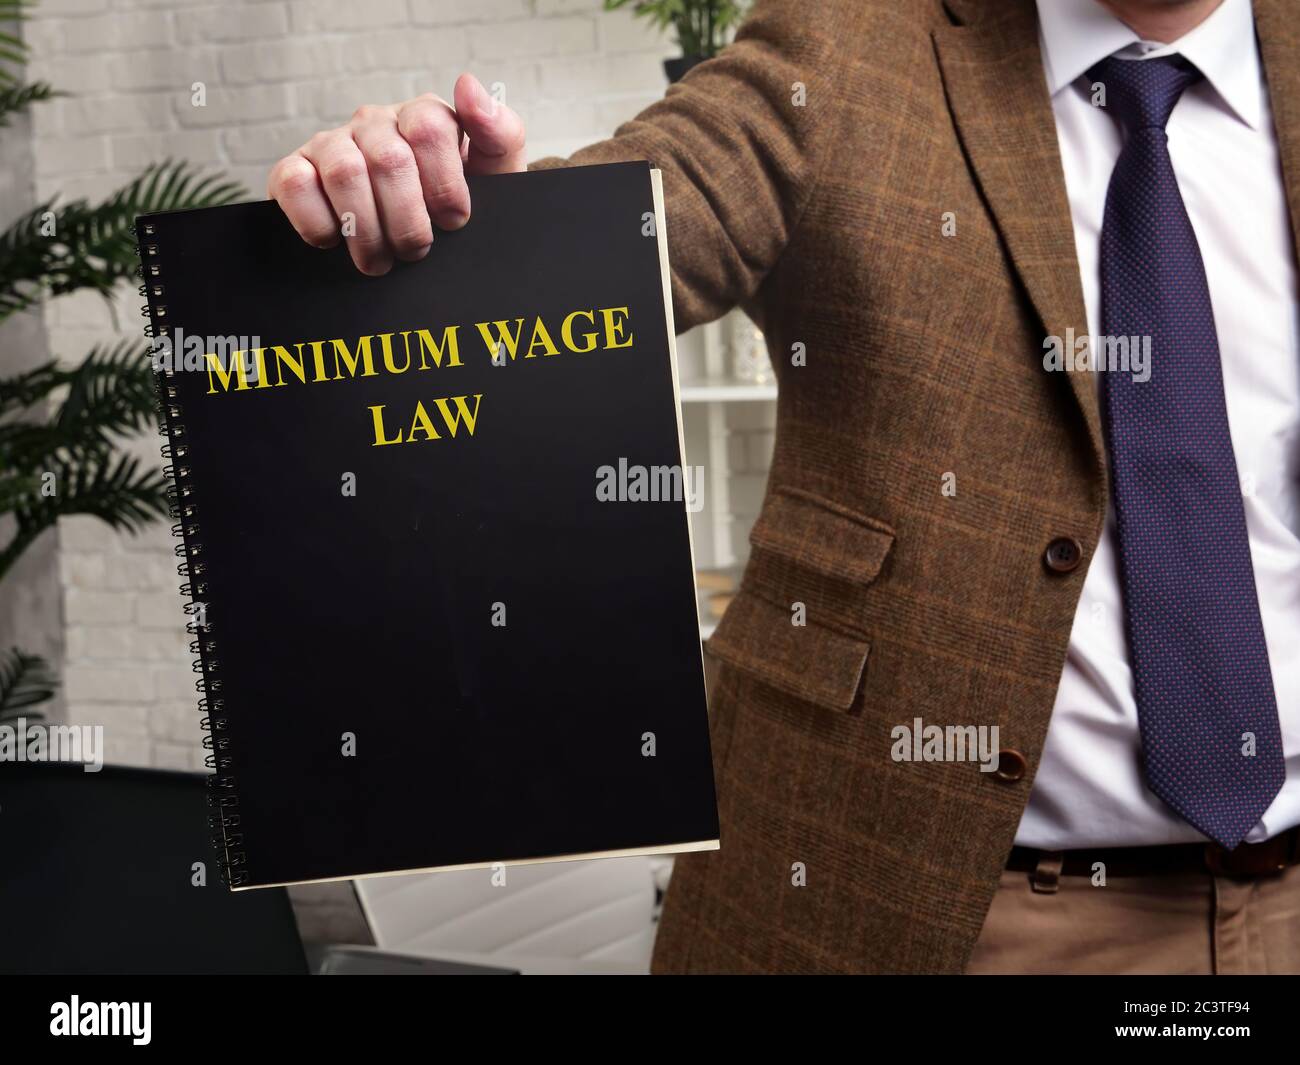 Un homme en costume montre un livre de loi sur le salaire minimum. Banque D'Images